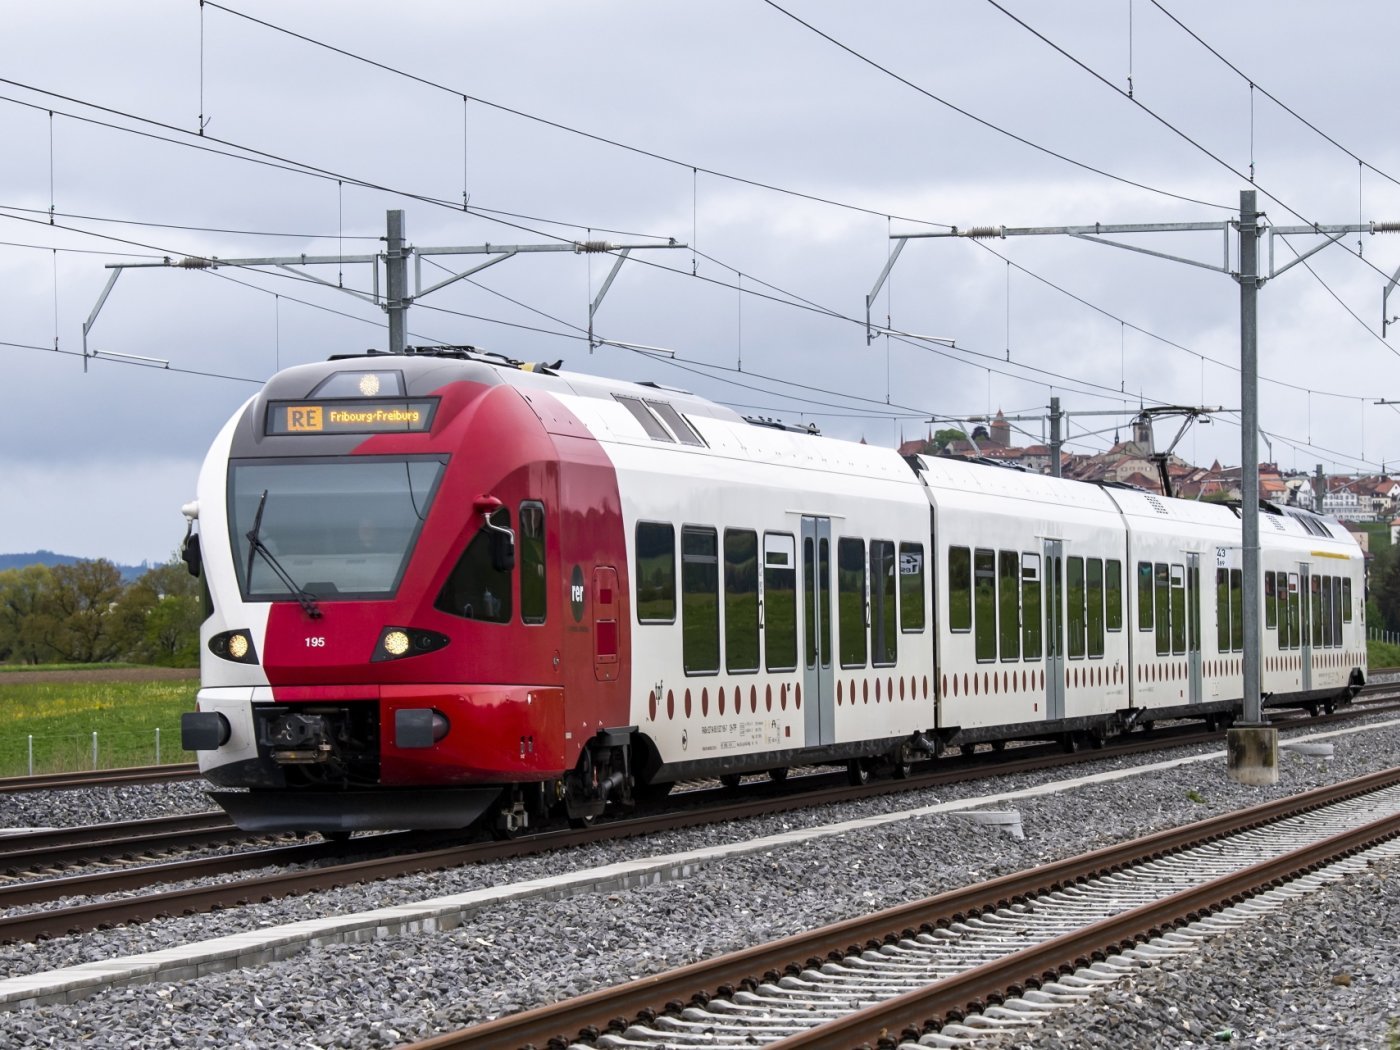 Le train RE des TPF circule entre Romont et Fribourg le vendredi 1er mai 2020 a Romont. Le developpement du RER Fribourg/Freiburg prend un nouvel essor grace a un partenariat entre les CFF et les TPF sous l'egide de l'Etat de Fribourg. (KEYSTONE/Jean-Christophe Bott)